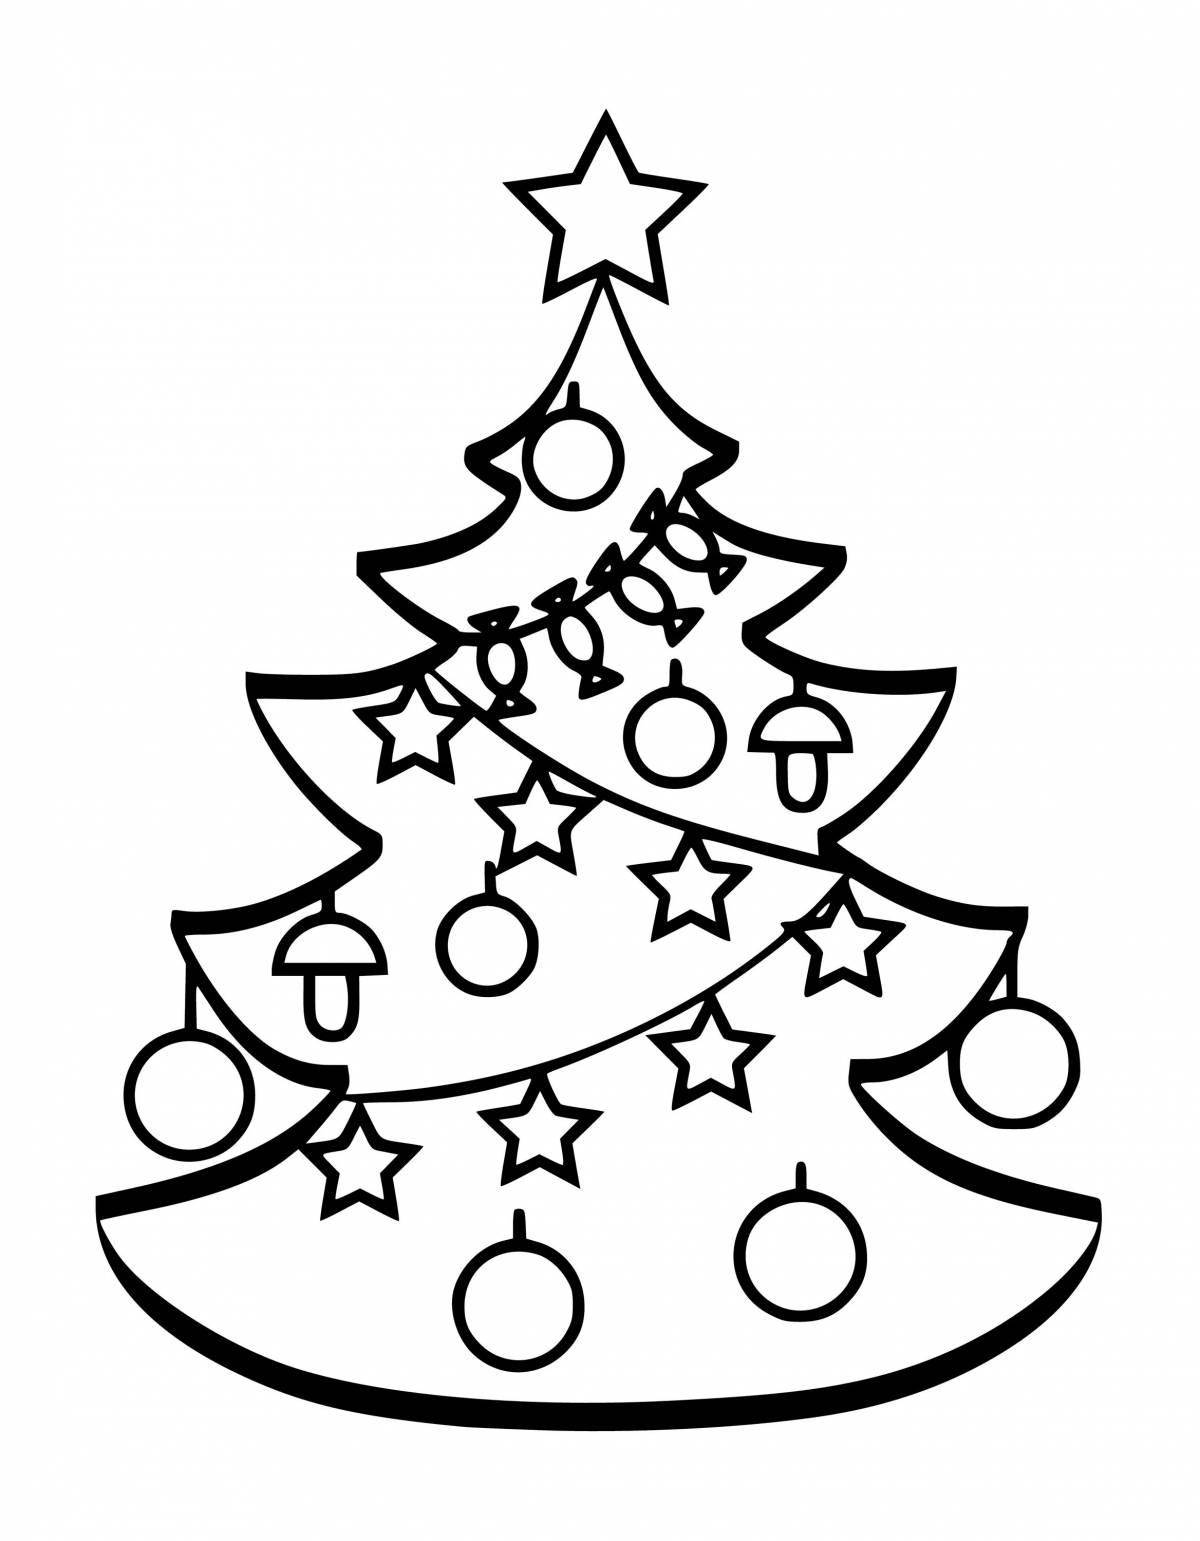 Радостный рисунок рождественской елки